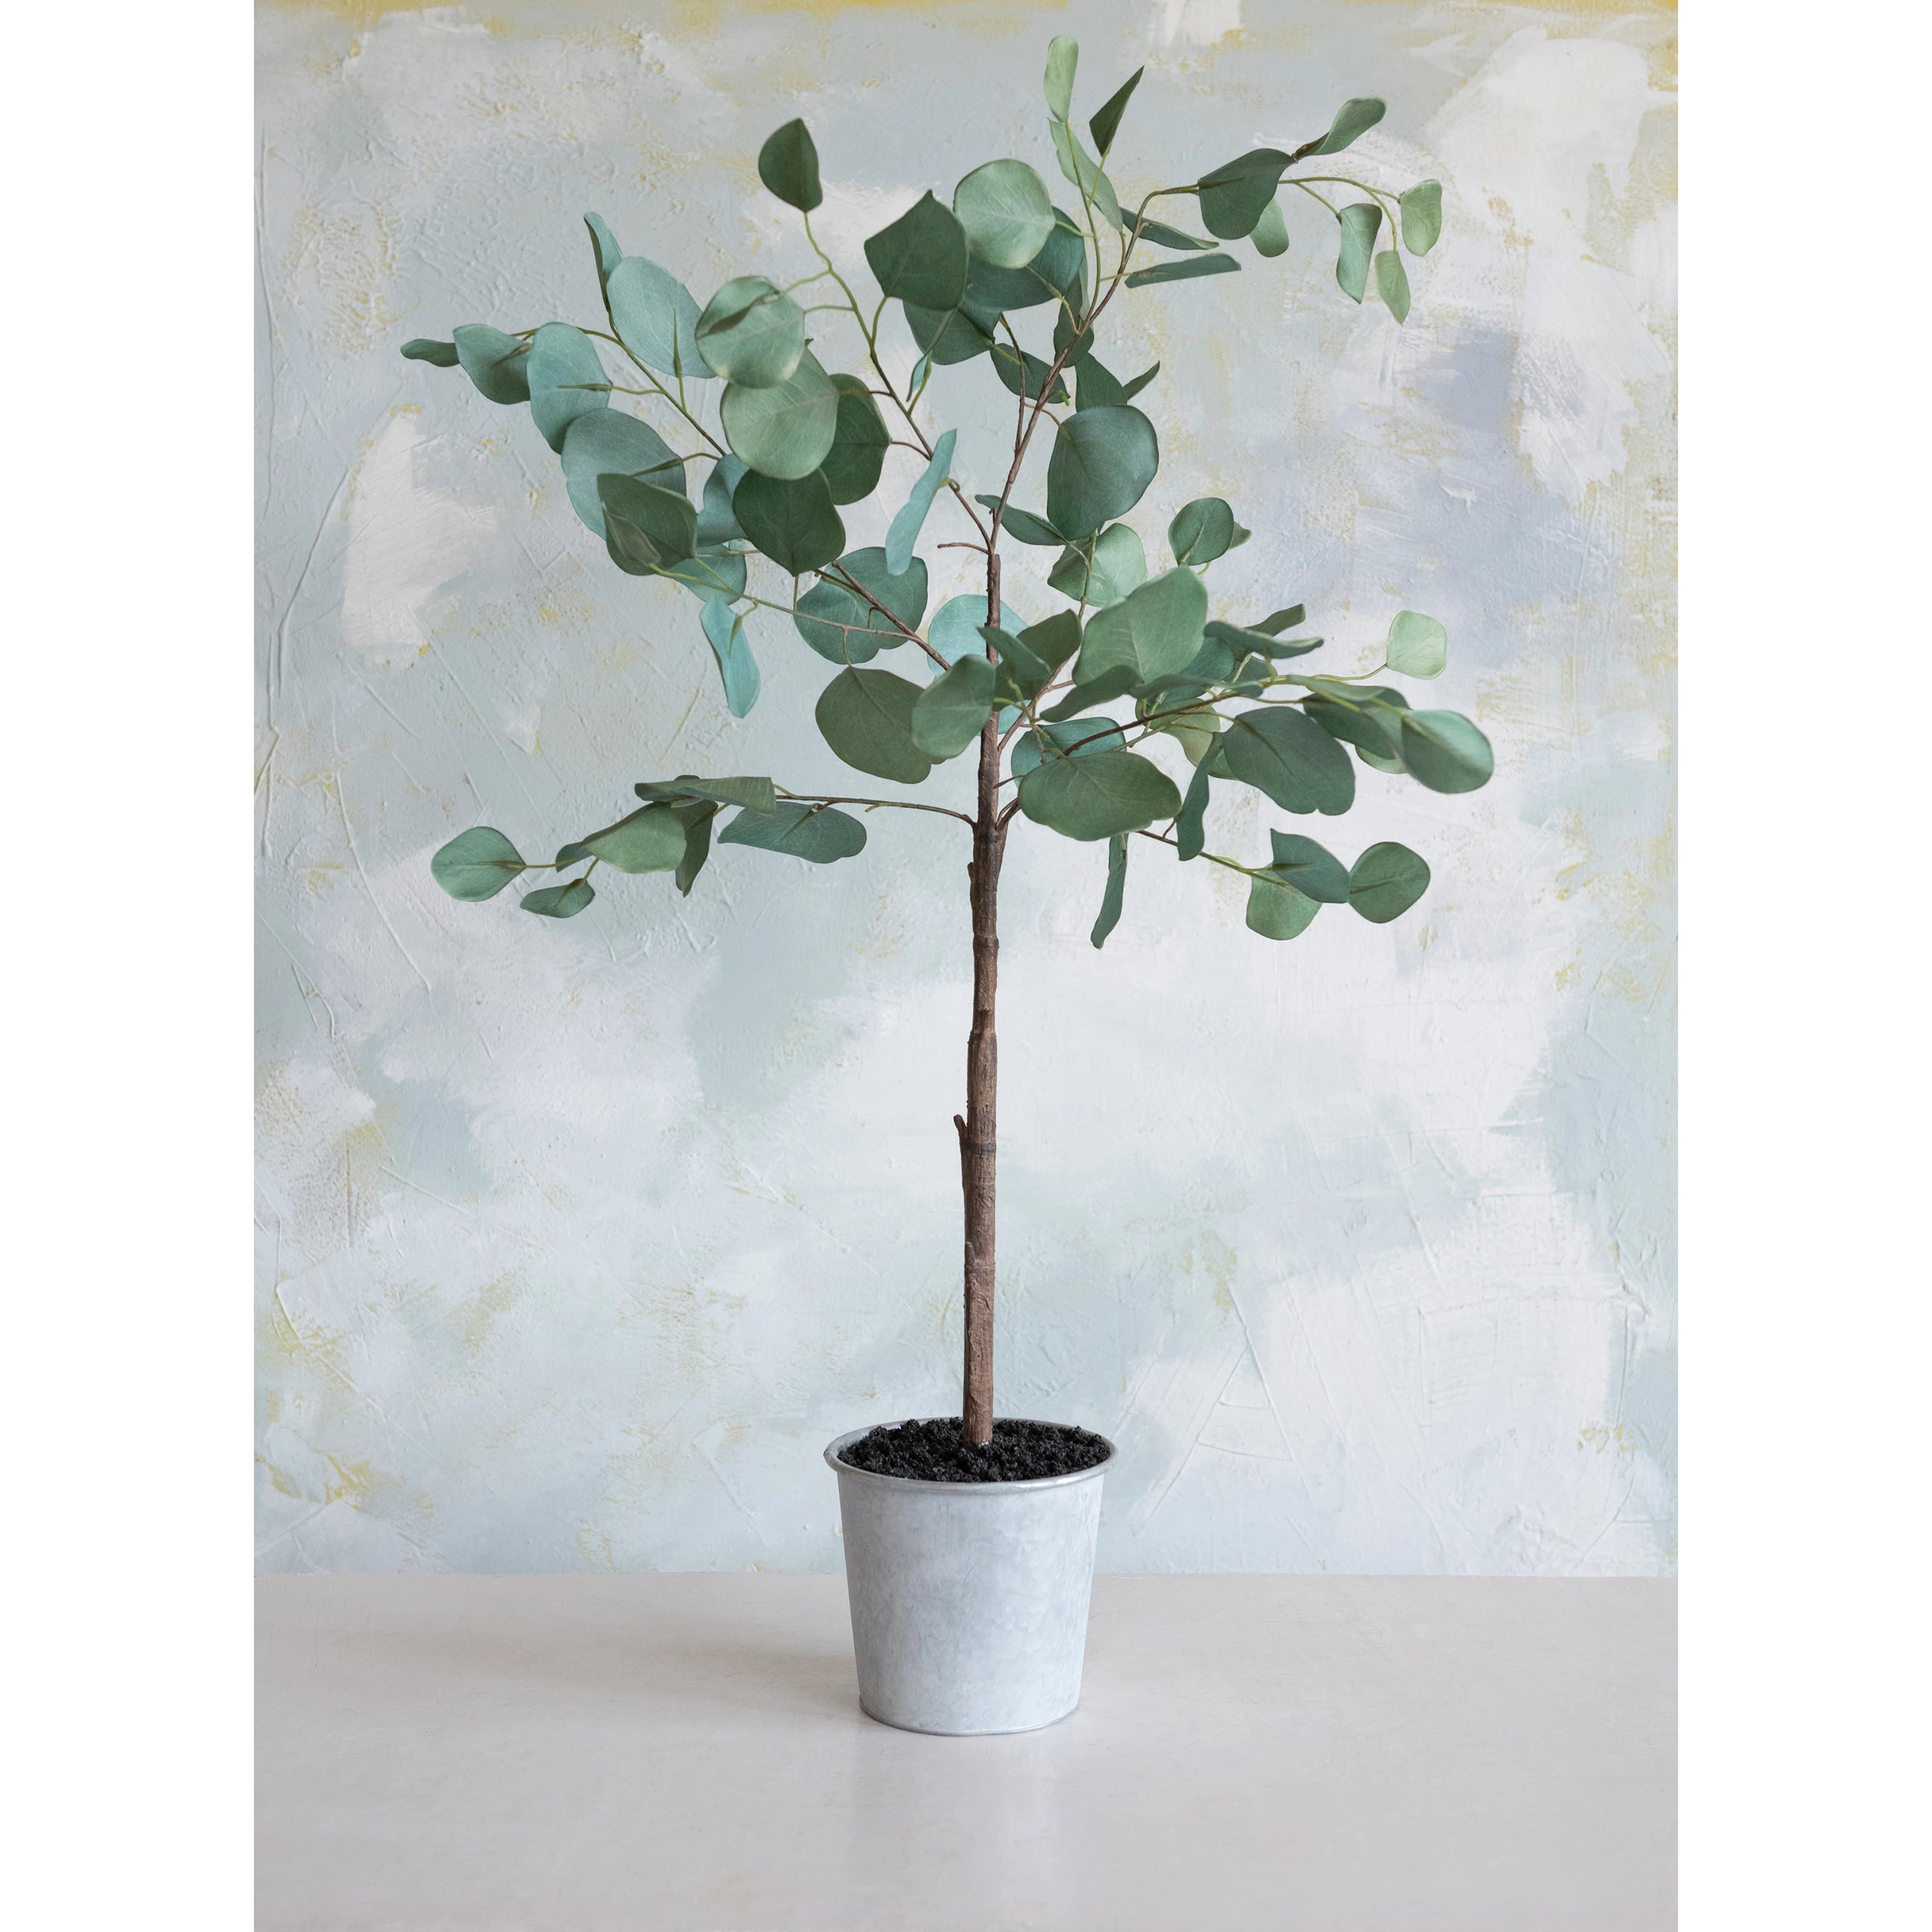 Faux Eucalyptus Tree in Pot - Image 1